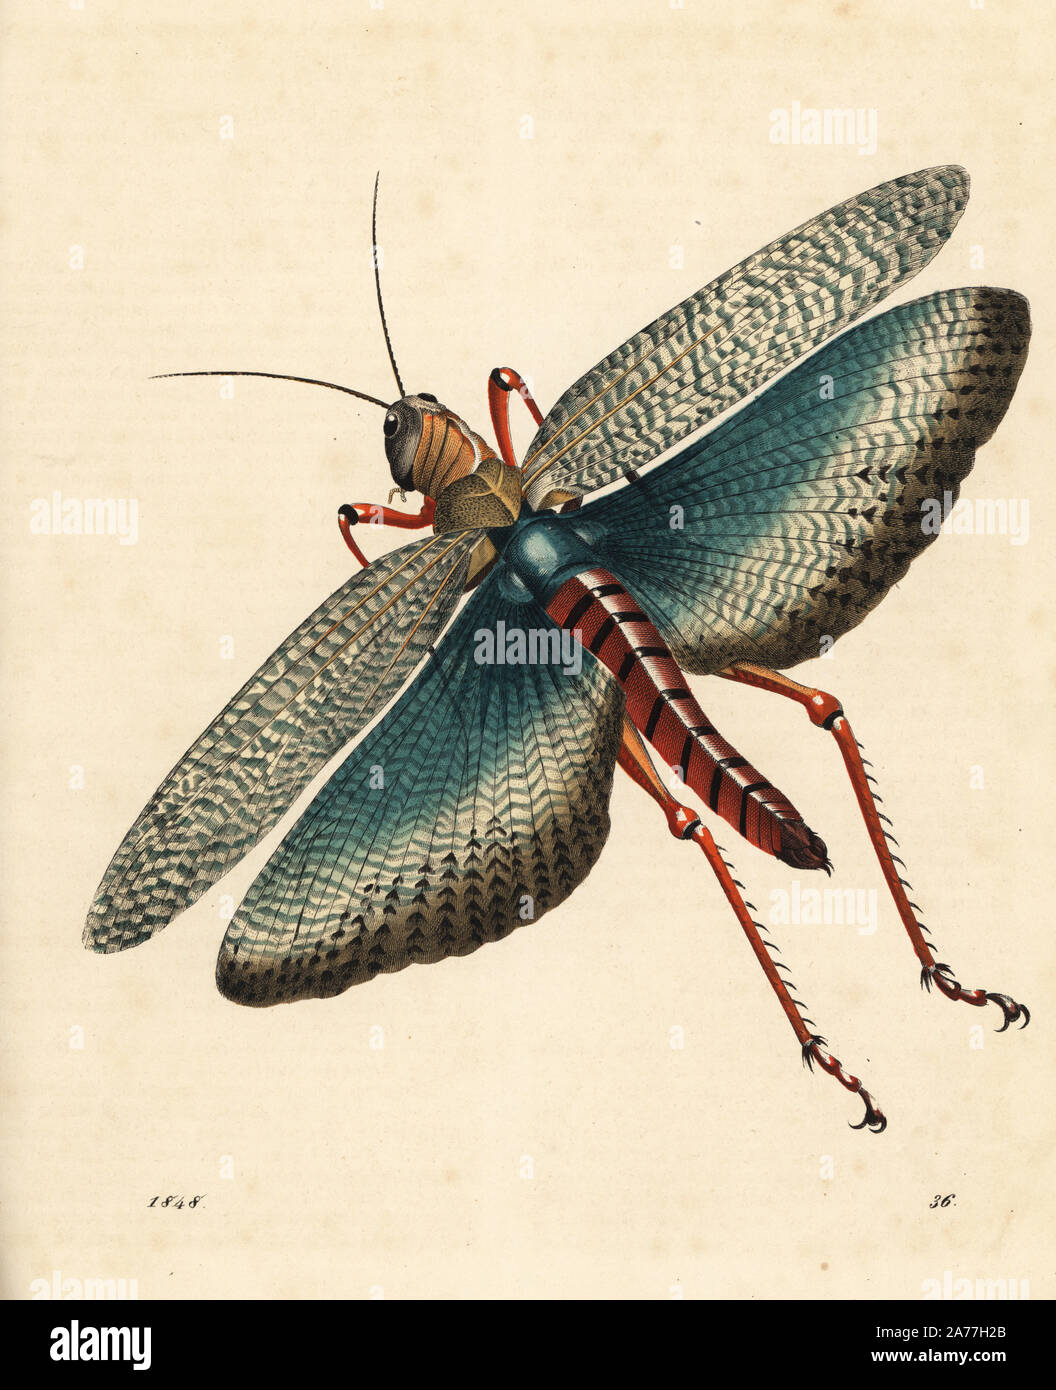 Indische Heuschrecke, Gryllus indicus (Schistocerca gregaria?). Papierkörbe Lithographie von Carl Hoffmann's Buch der Welt, Stuttgart, 1848. Stockfoto